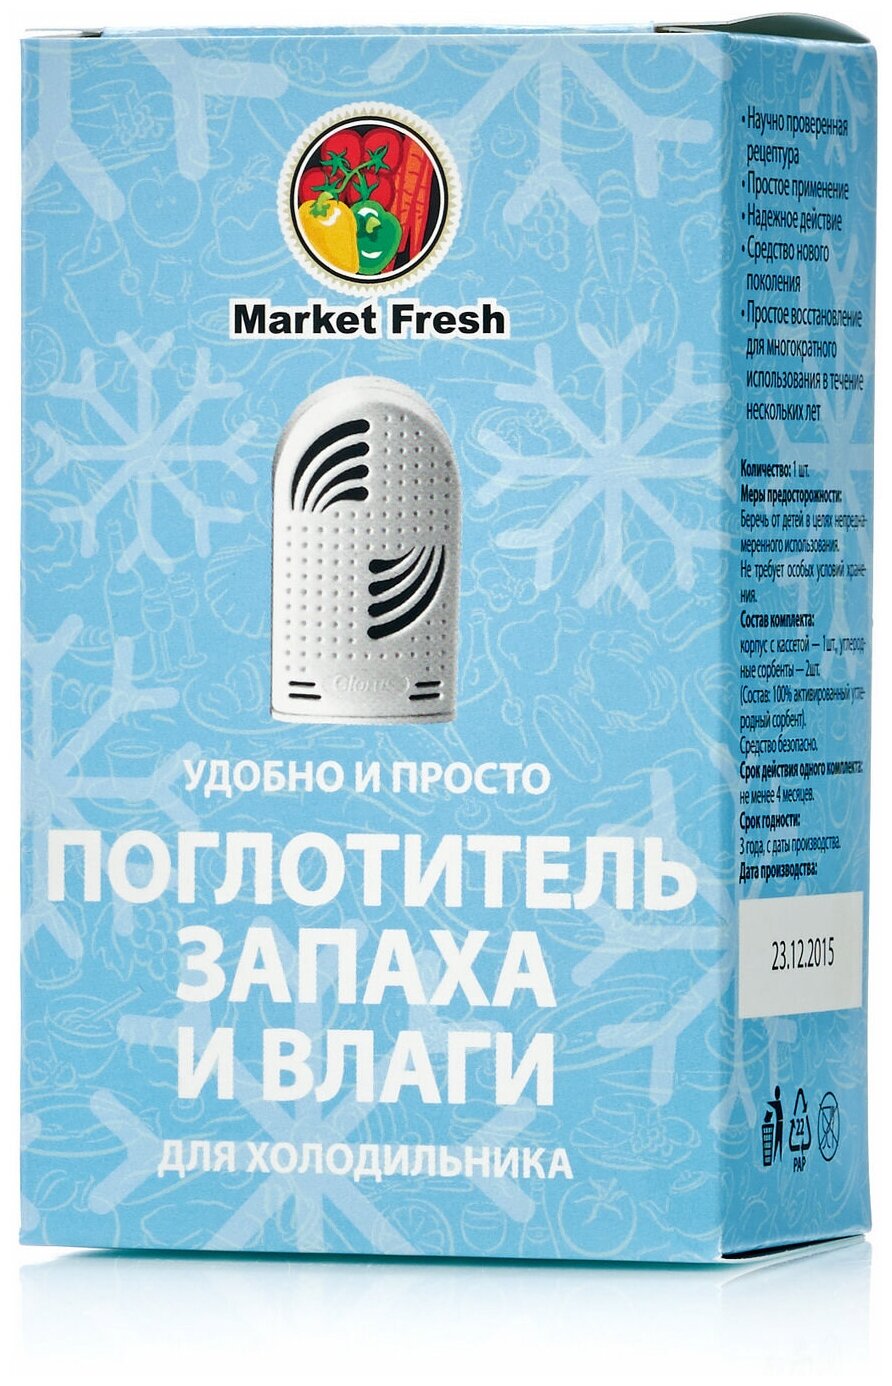 Market Fresh Поглотитель запаха и влаги для холодильника